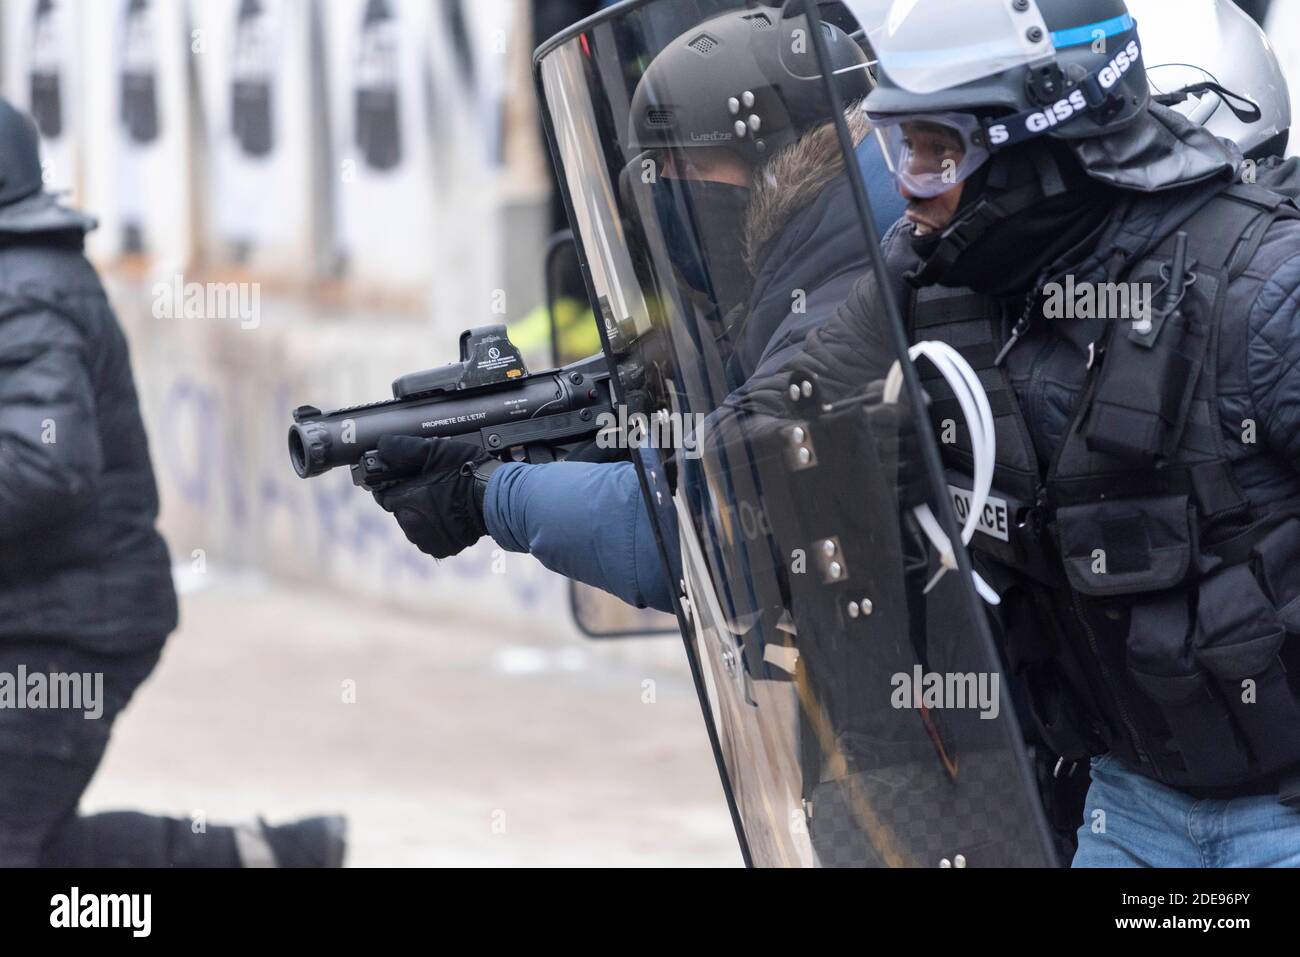 Les policiers utilisent le type Flashball LBD-40 pour repousser les  manifestants violents, certains LBD étant équipés d'une caméra sur le canon  de l'arme. Plusieurs milliers de personnes ont manifesté entre la place